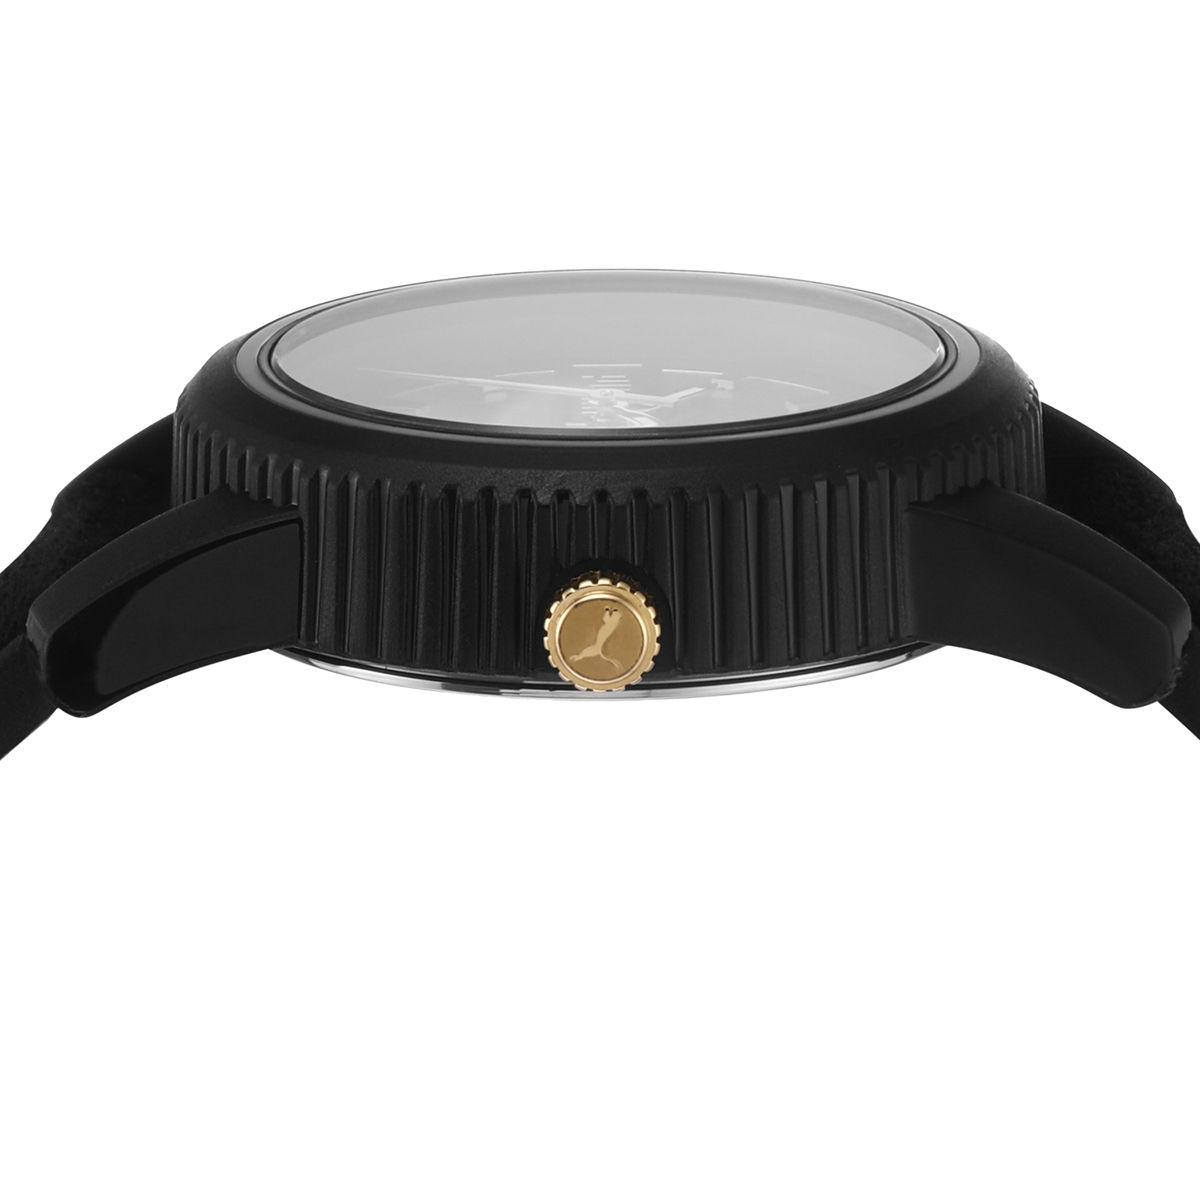 Puma Ultrafresh Black Watch P1075: Buy Puma Ultrafresh Black Watch